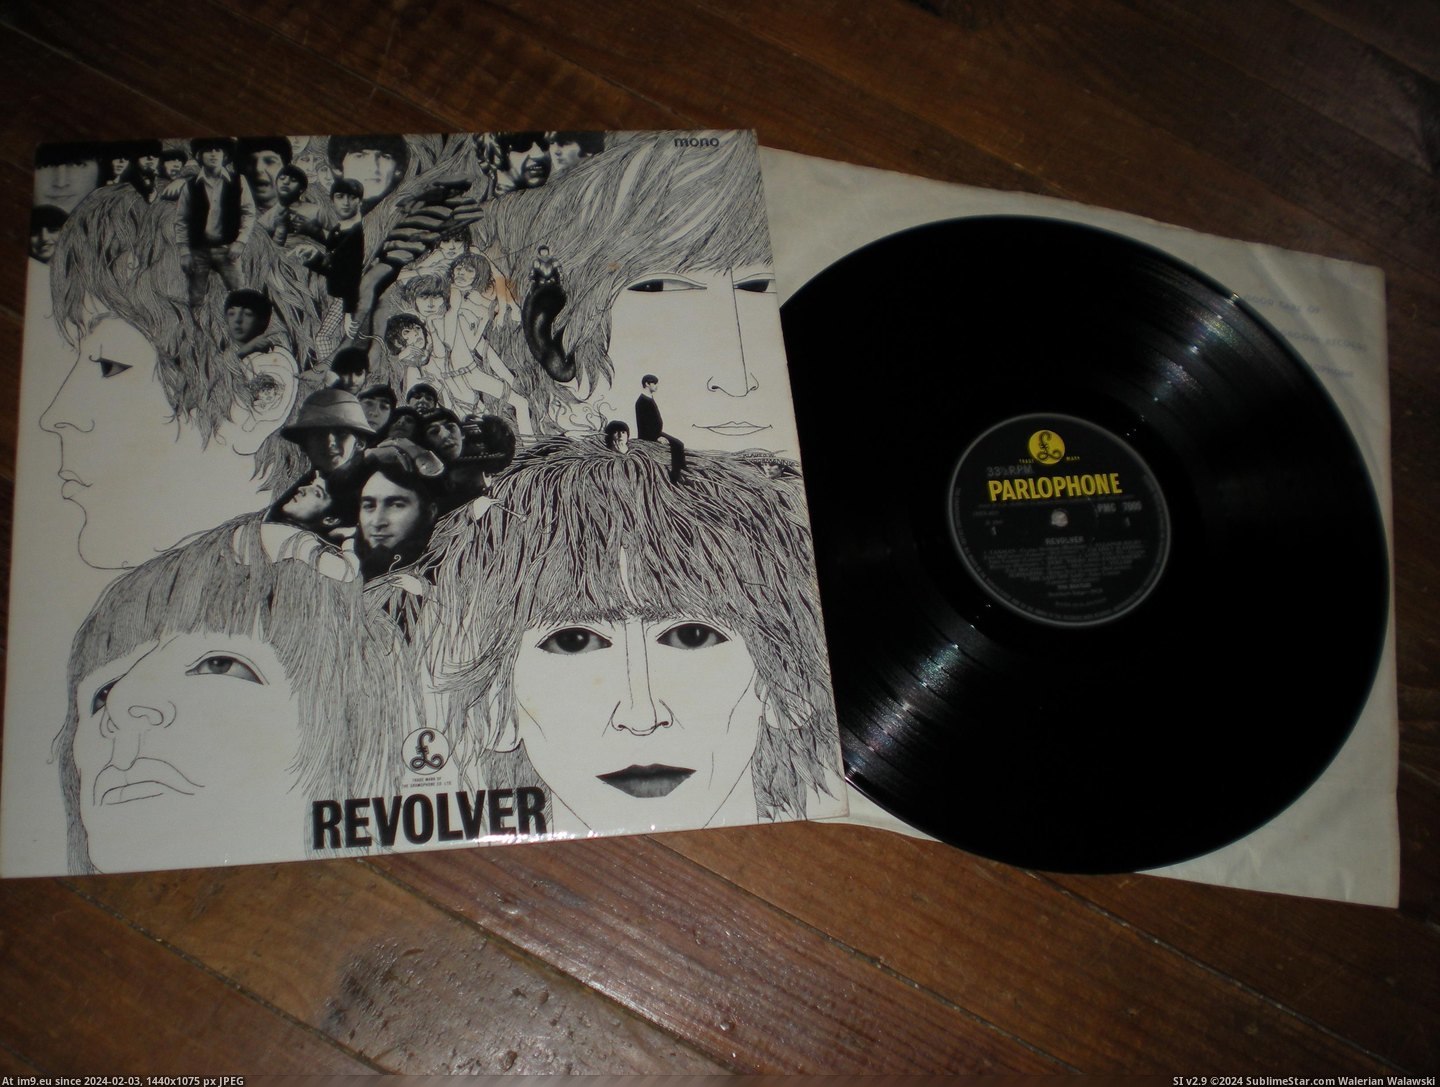  #Revolver  Revolver -2-3 2 Pic. (Bild von album new 1))